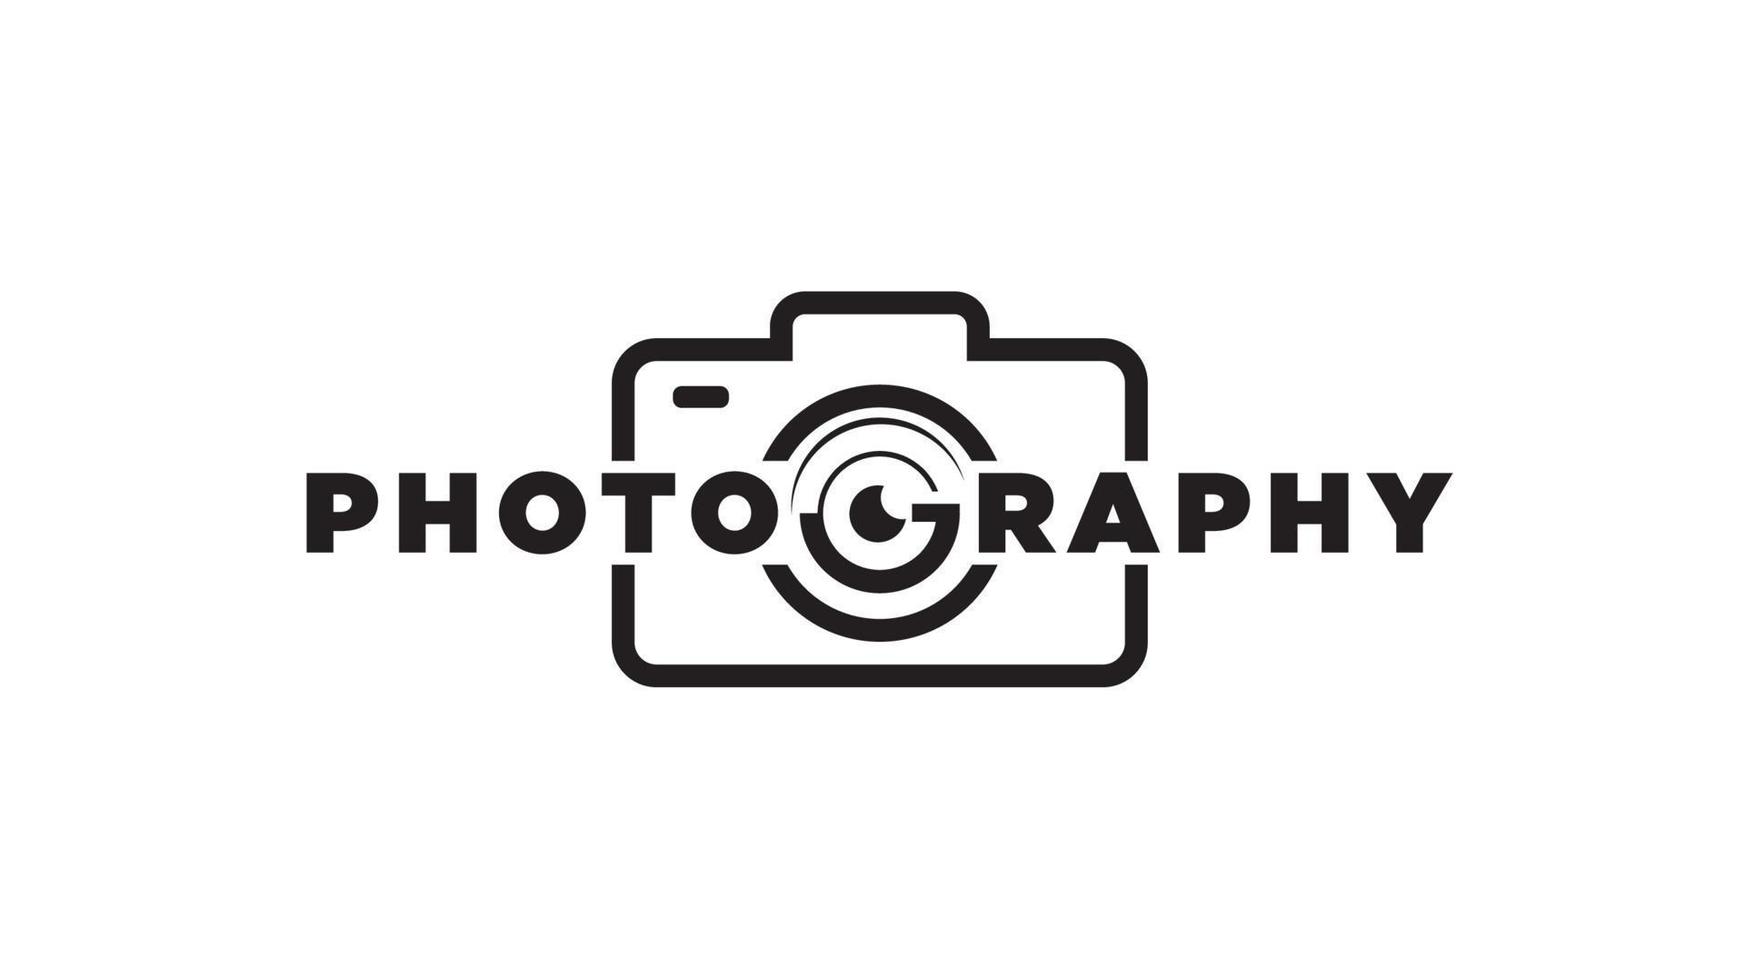 fotografie ontwerp logo bedrijfsnaam vector